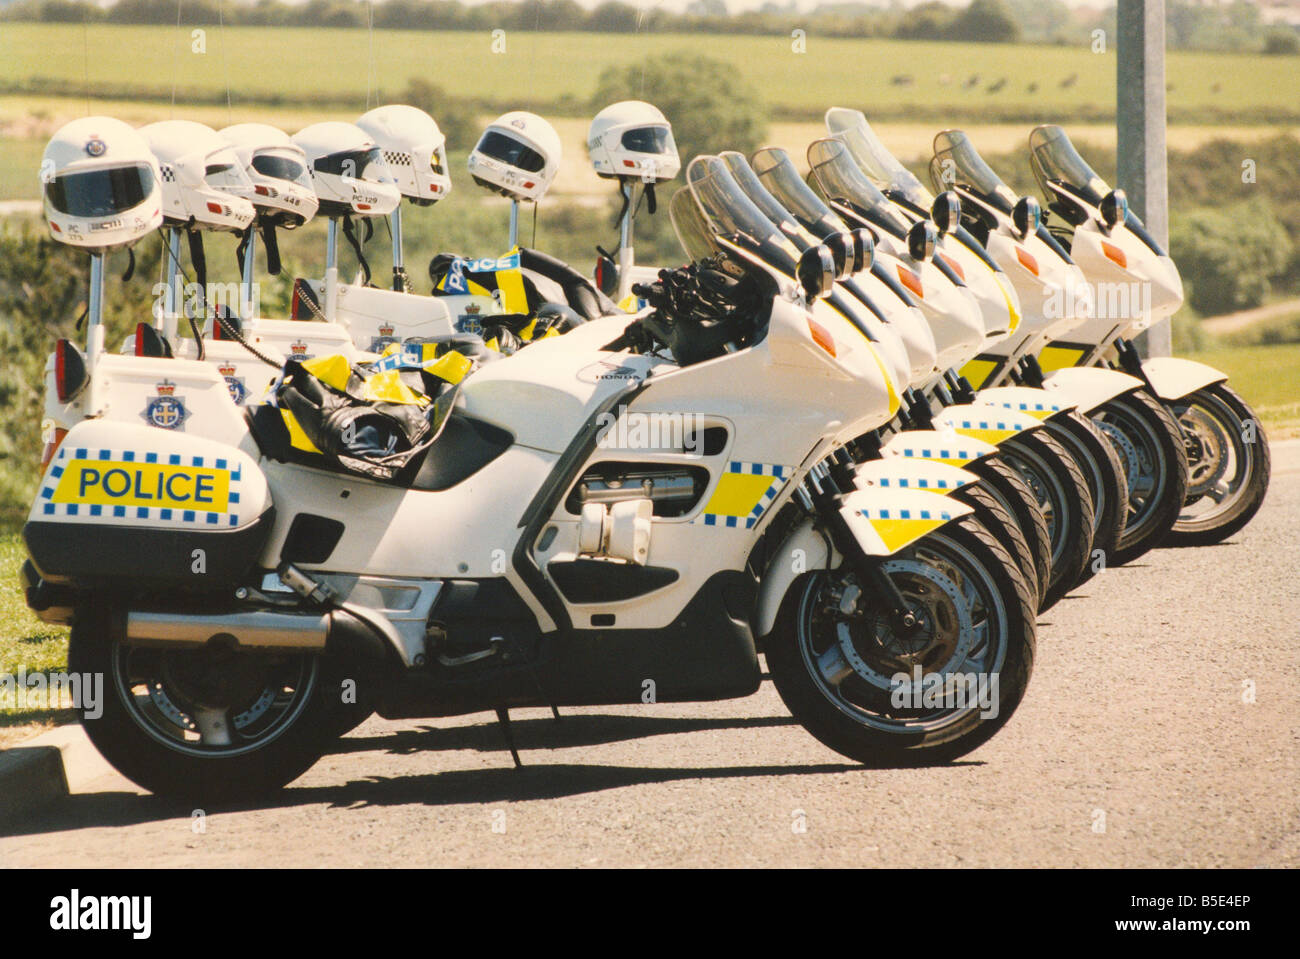 Une rangée de motos de police prêt pour l'action Banque D'Images